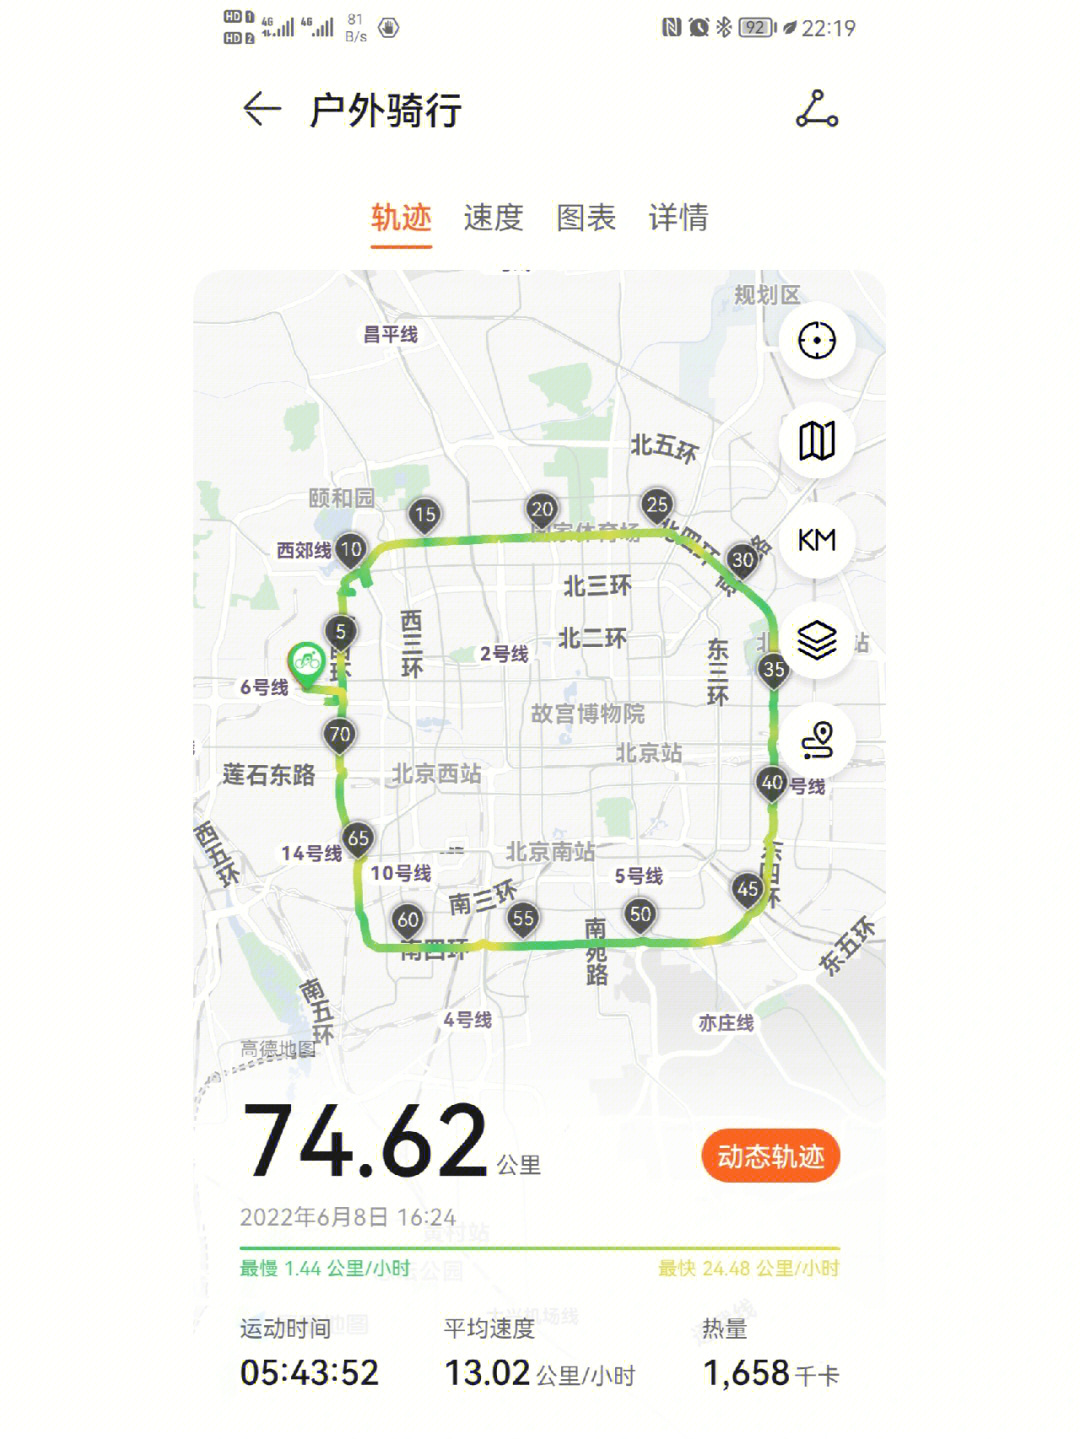 北京骑行共享单车骑四环06